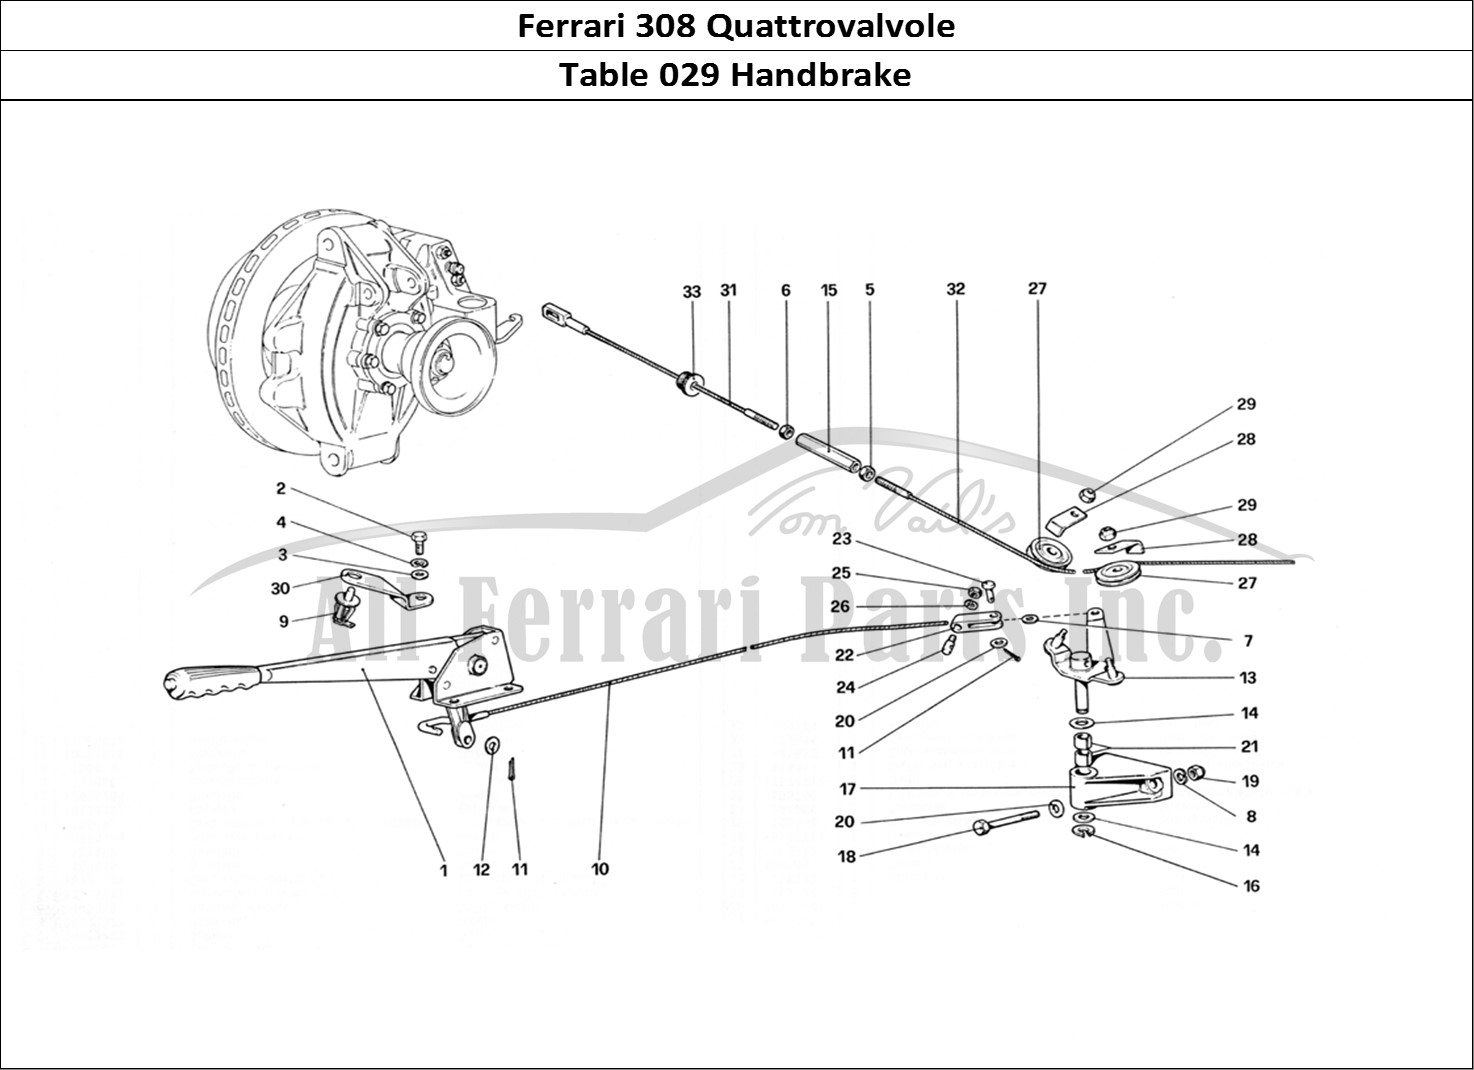 Ferrari Parts Ferrari 308 Quattrovalvole (1985) Page 029 Hand - Brake Control